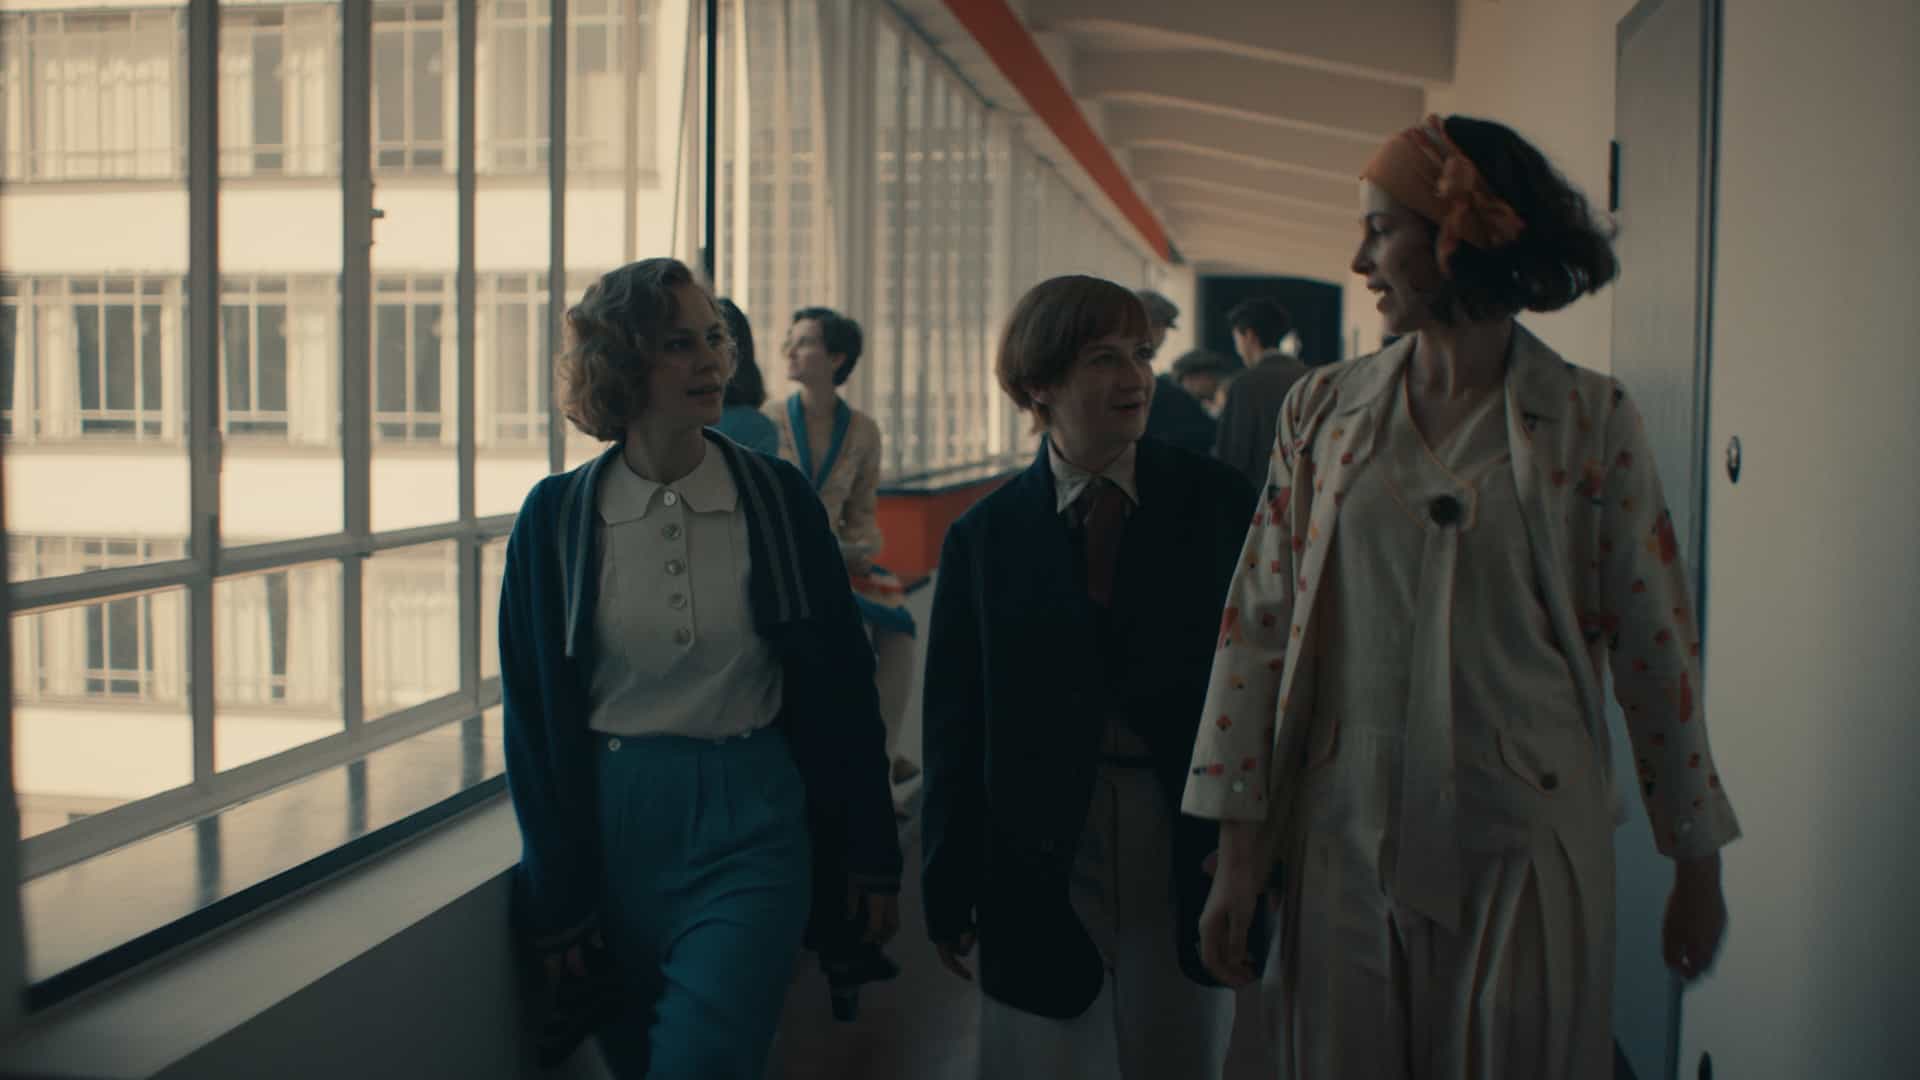 Filmszene. Lotte Brendel im Gespräch mit Anni Albers und Friedl Dicker, während sie einen lang Gang im Bauhaus Dessau entlanglaufen.